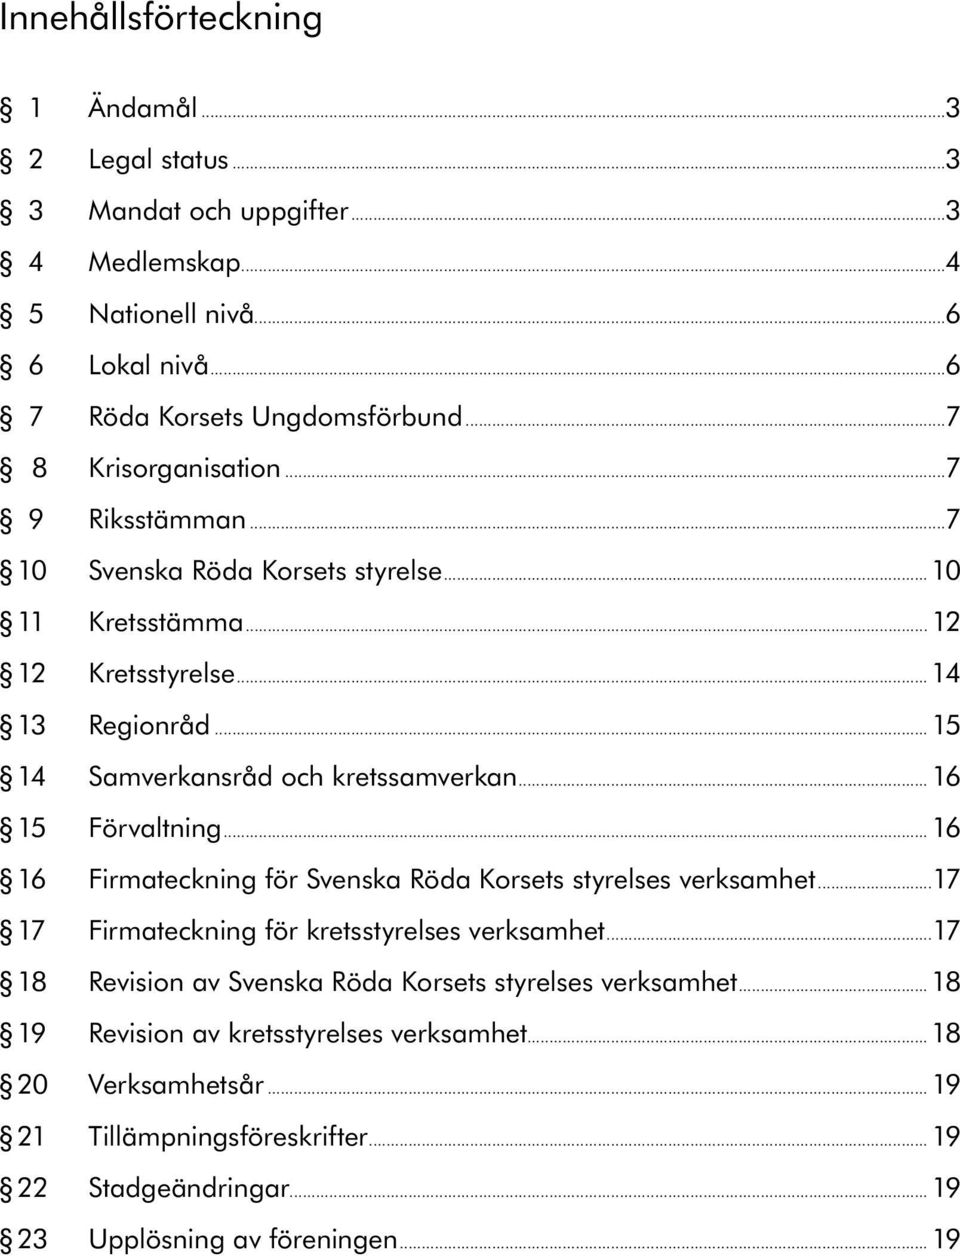 .. 16 15 Förvaltning... 16 16 Firmateckning för Svenska Röda Korsets styrelses verksamhet...17 17 Firmateckning för kretsstyrelses verksamhet.